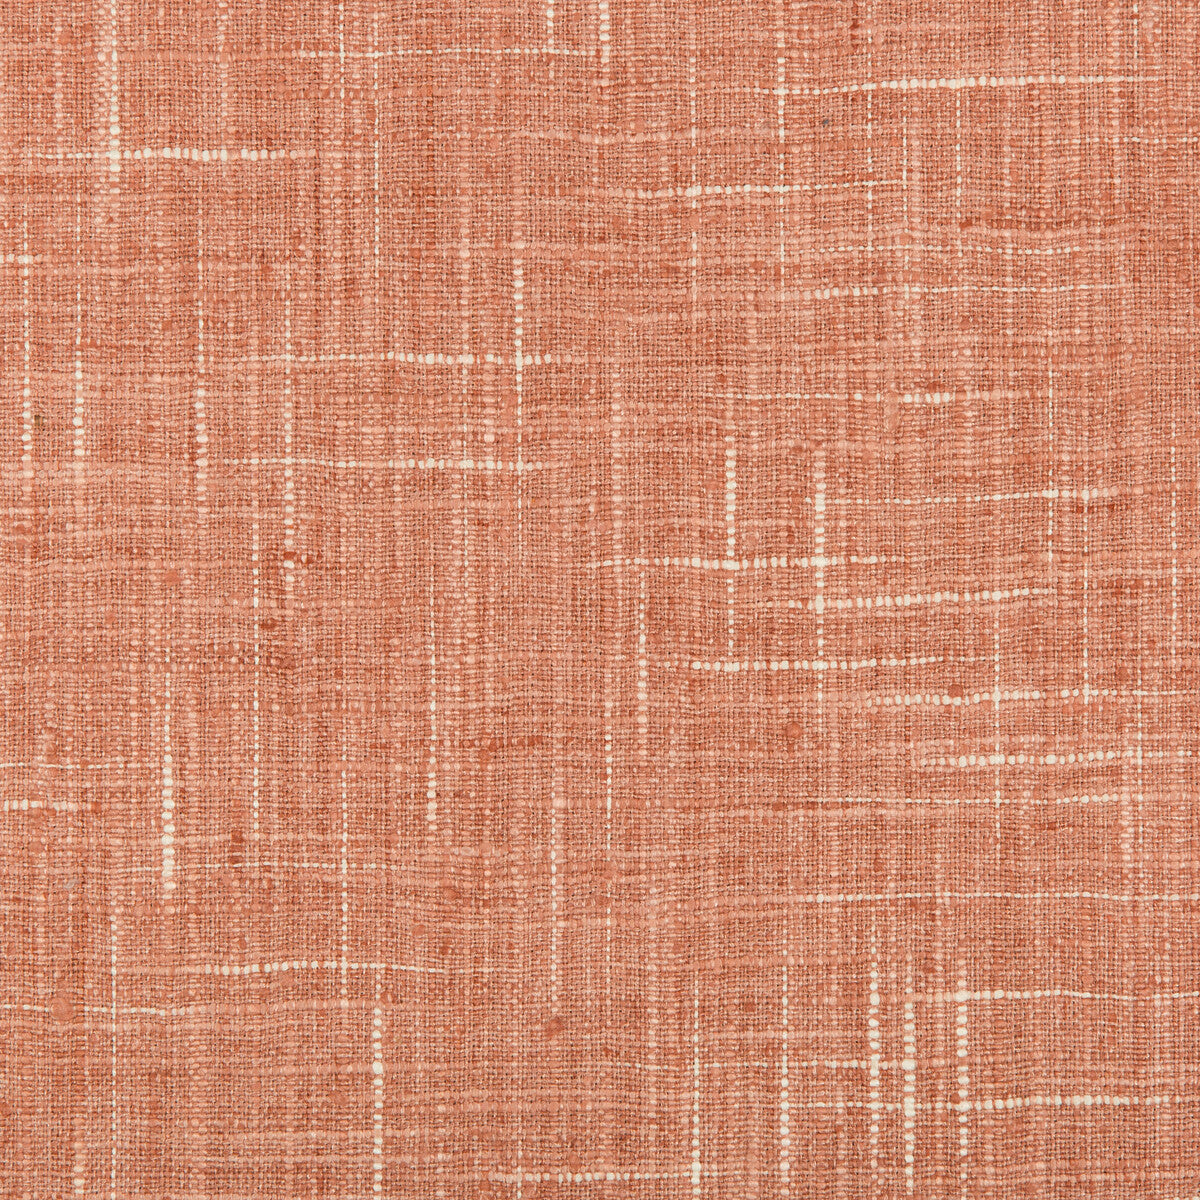 Kravet Basics fabric in 35477-17 color - pattern 35477.17.0 - by Kravet Basics